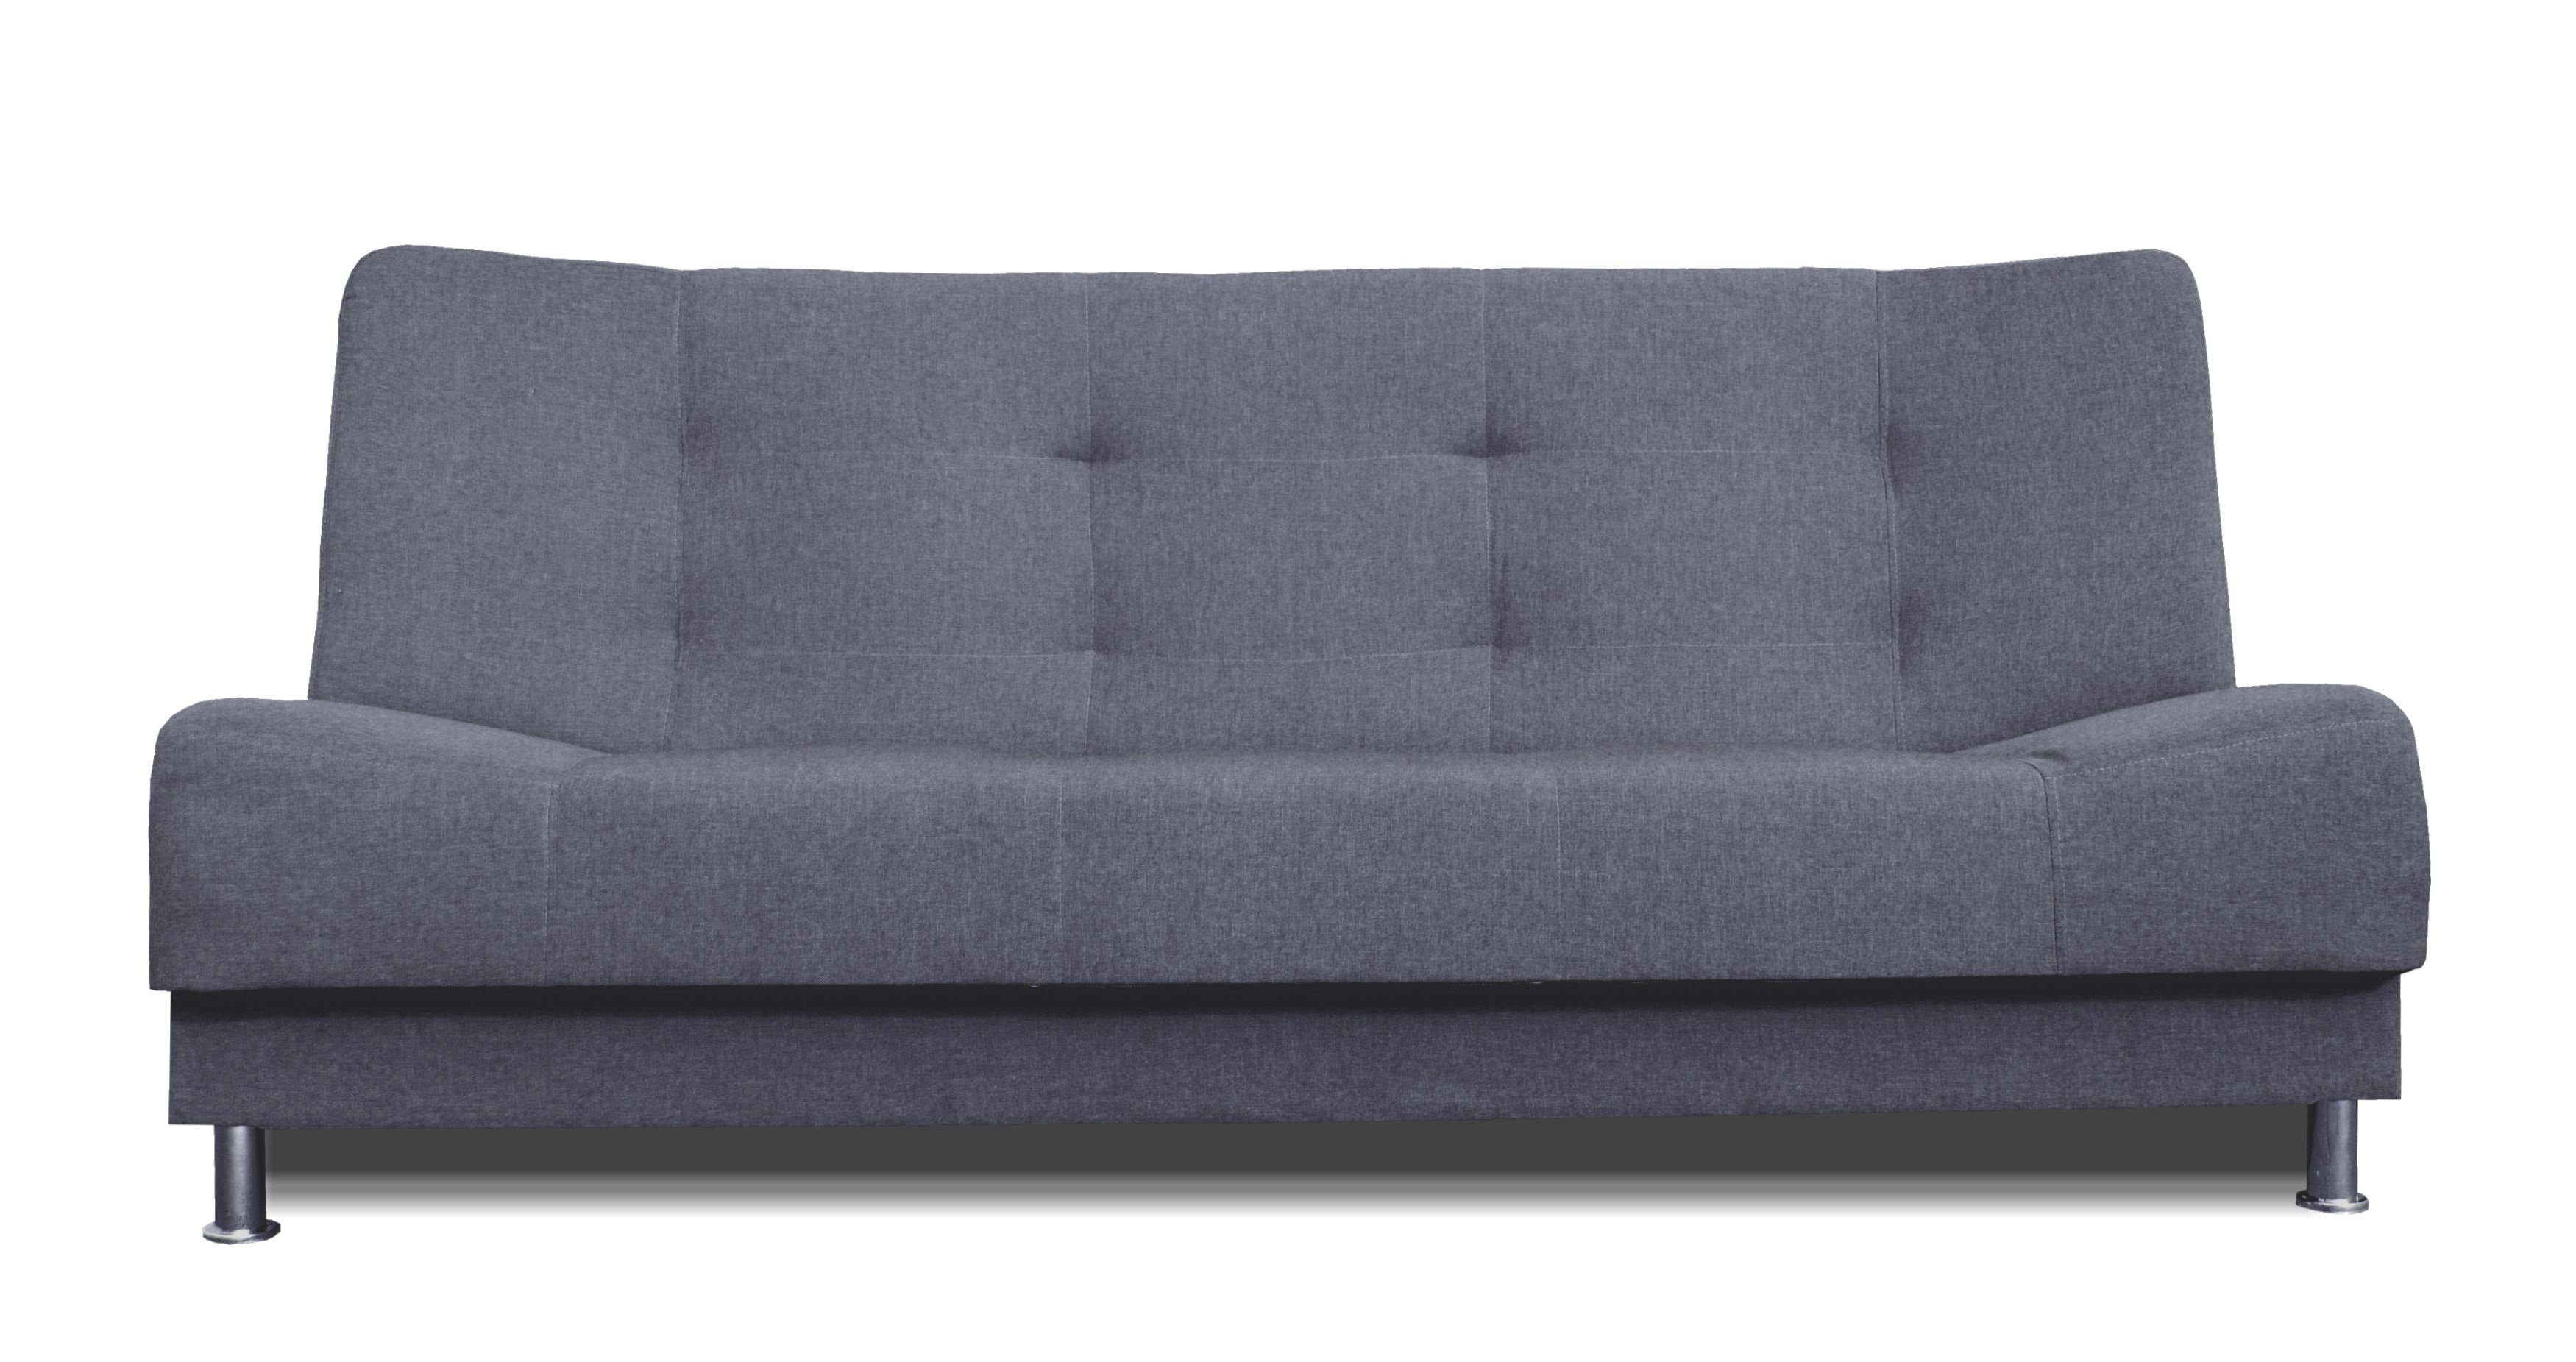 Siblo 3-Sitzer Bettzeugbehälter, Schlaffunktion, Dreisitzige Dunkelgrau Vittoria Dreisitzer-Sofa mit Couch